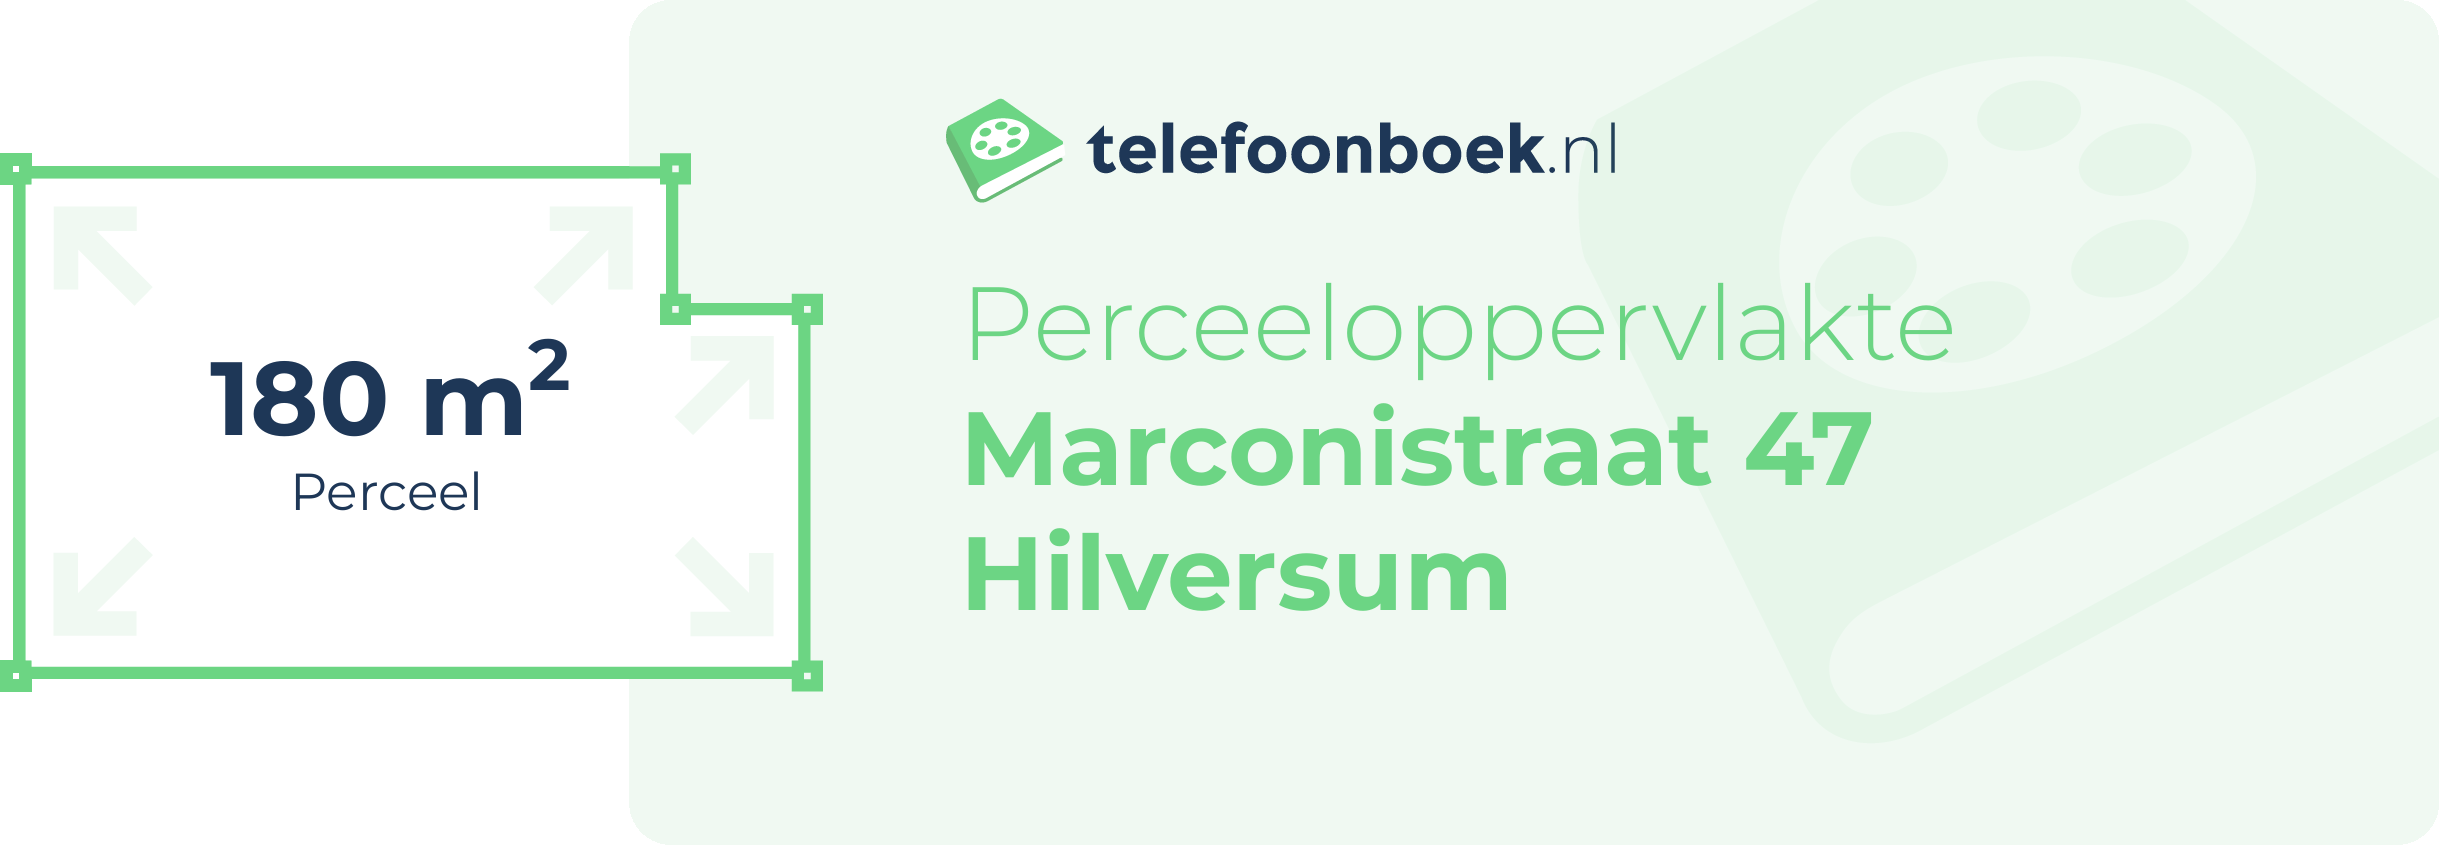 Perceeloppervlakte Marconistraat 47 Hilversum